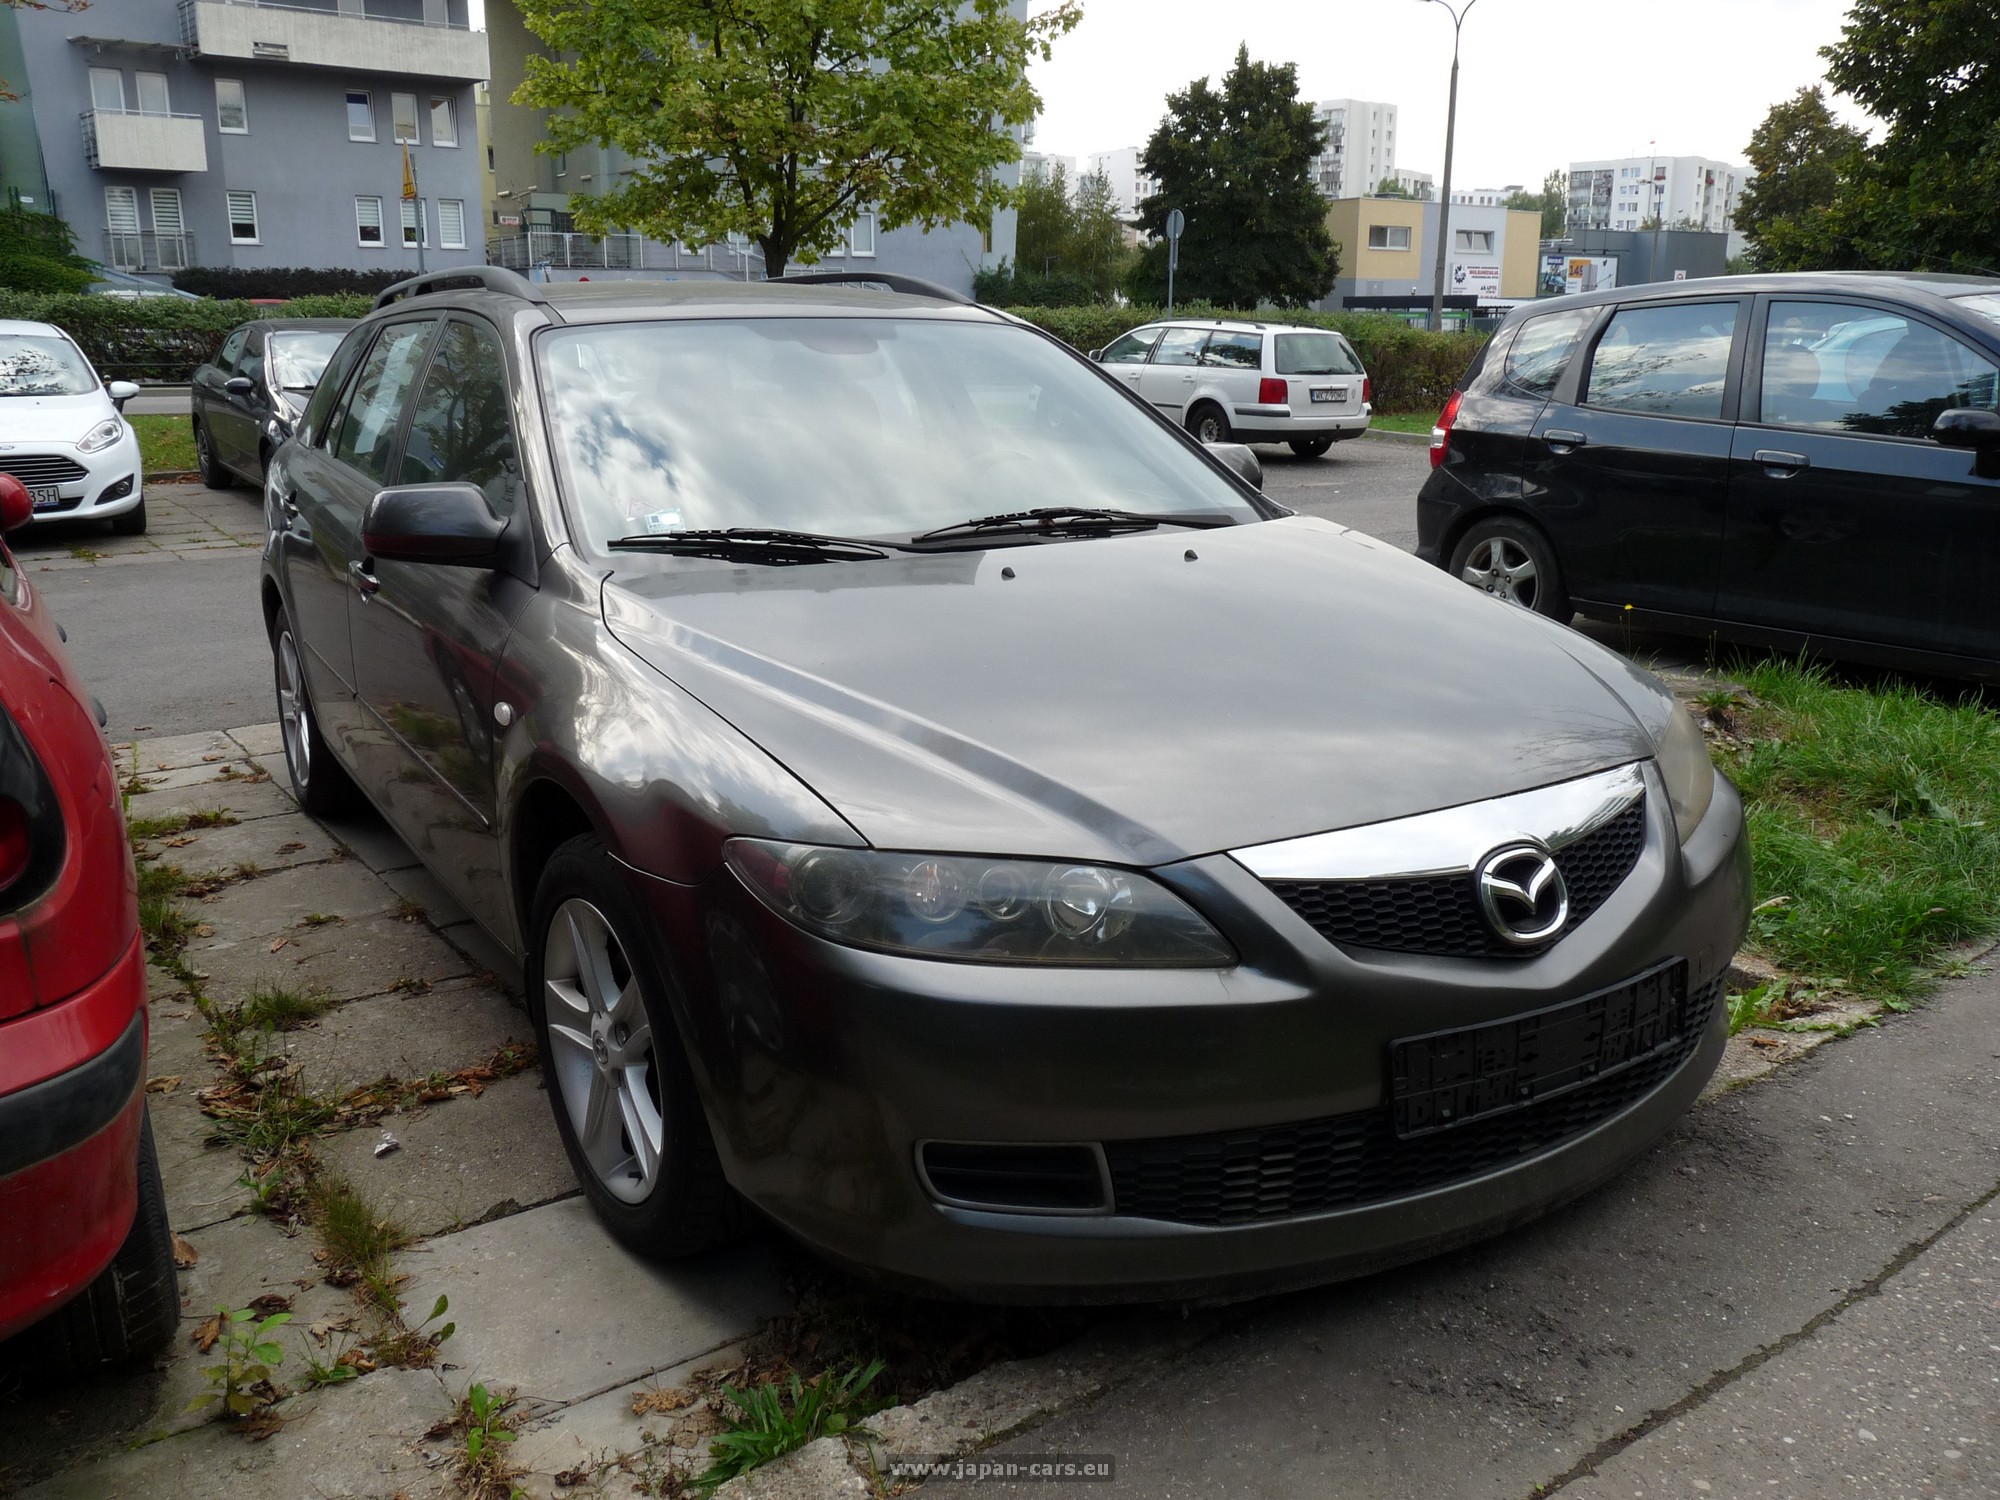 Raport spalania Mazda 6 I kombi GY 1.8 Testysamochodow.pl